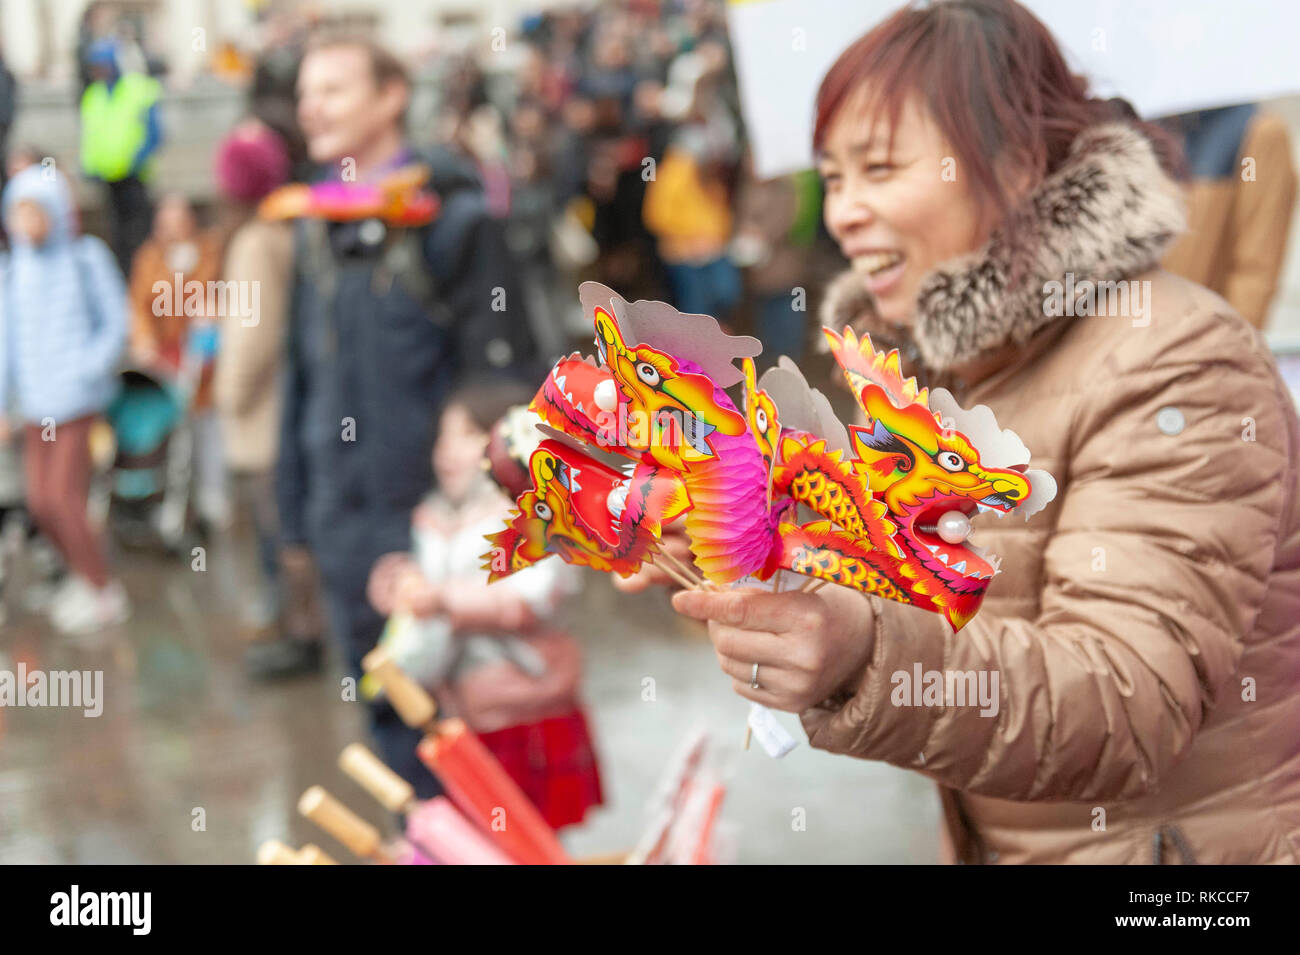 Londres, Royaume-Uni. 10 fév, 2019. Dragons chinois et des nouveautés en vente sur Trafalgar Square à Londres, Angleterre, Royaume-Uni., pendant les célébrations du Nouvel An chinois. Crédit : Ian Laker/Alamy Live News. Banque D'Images